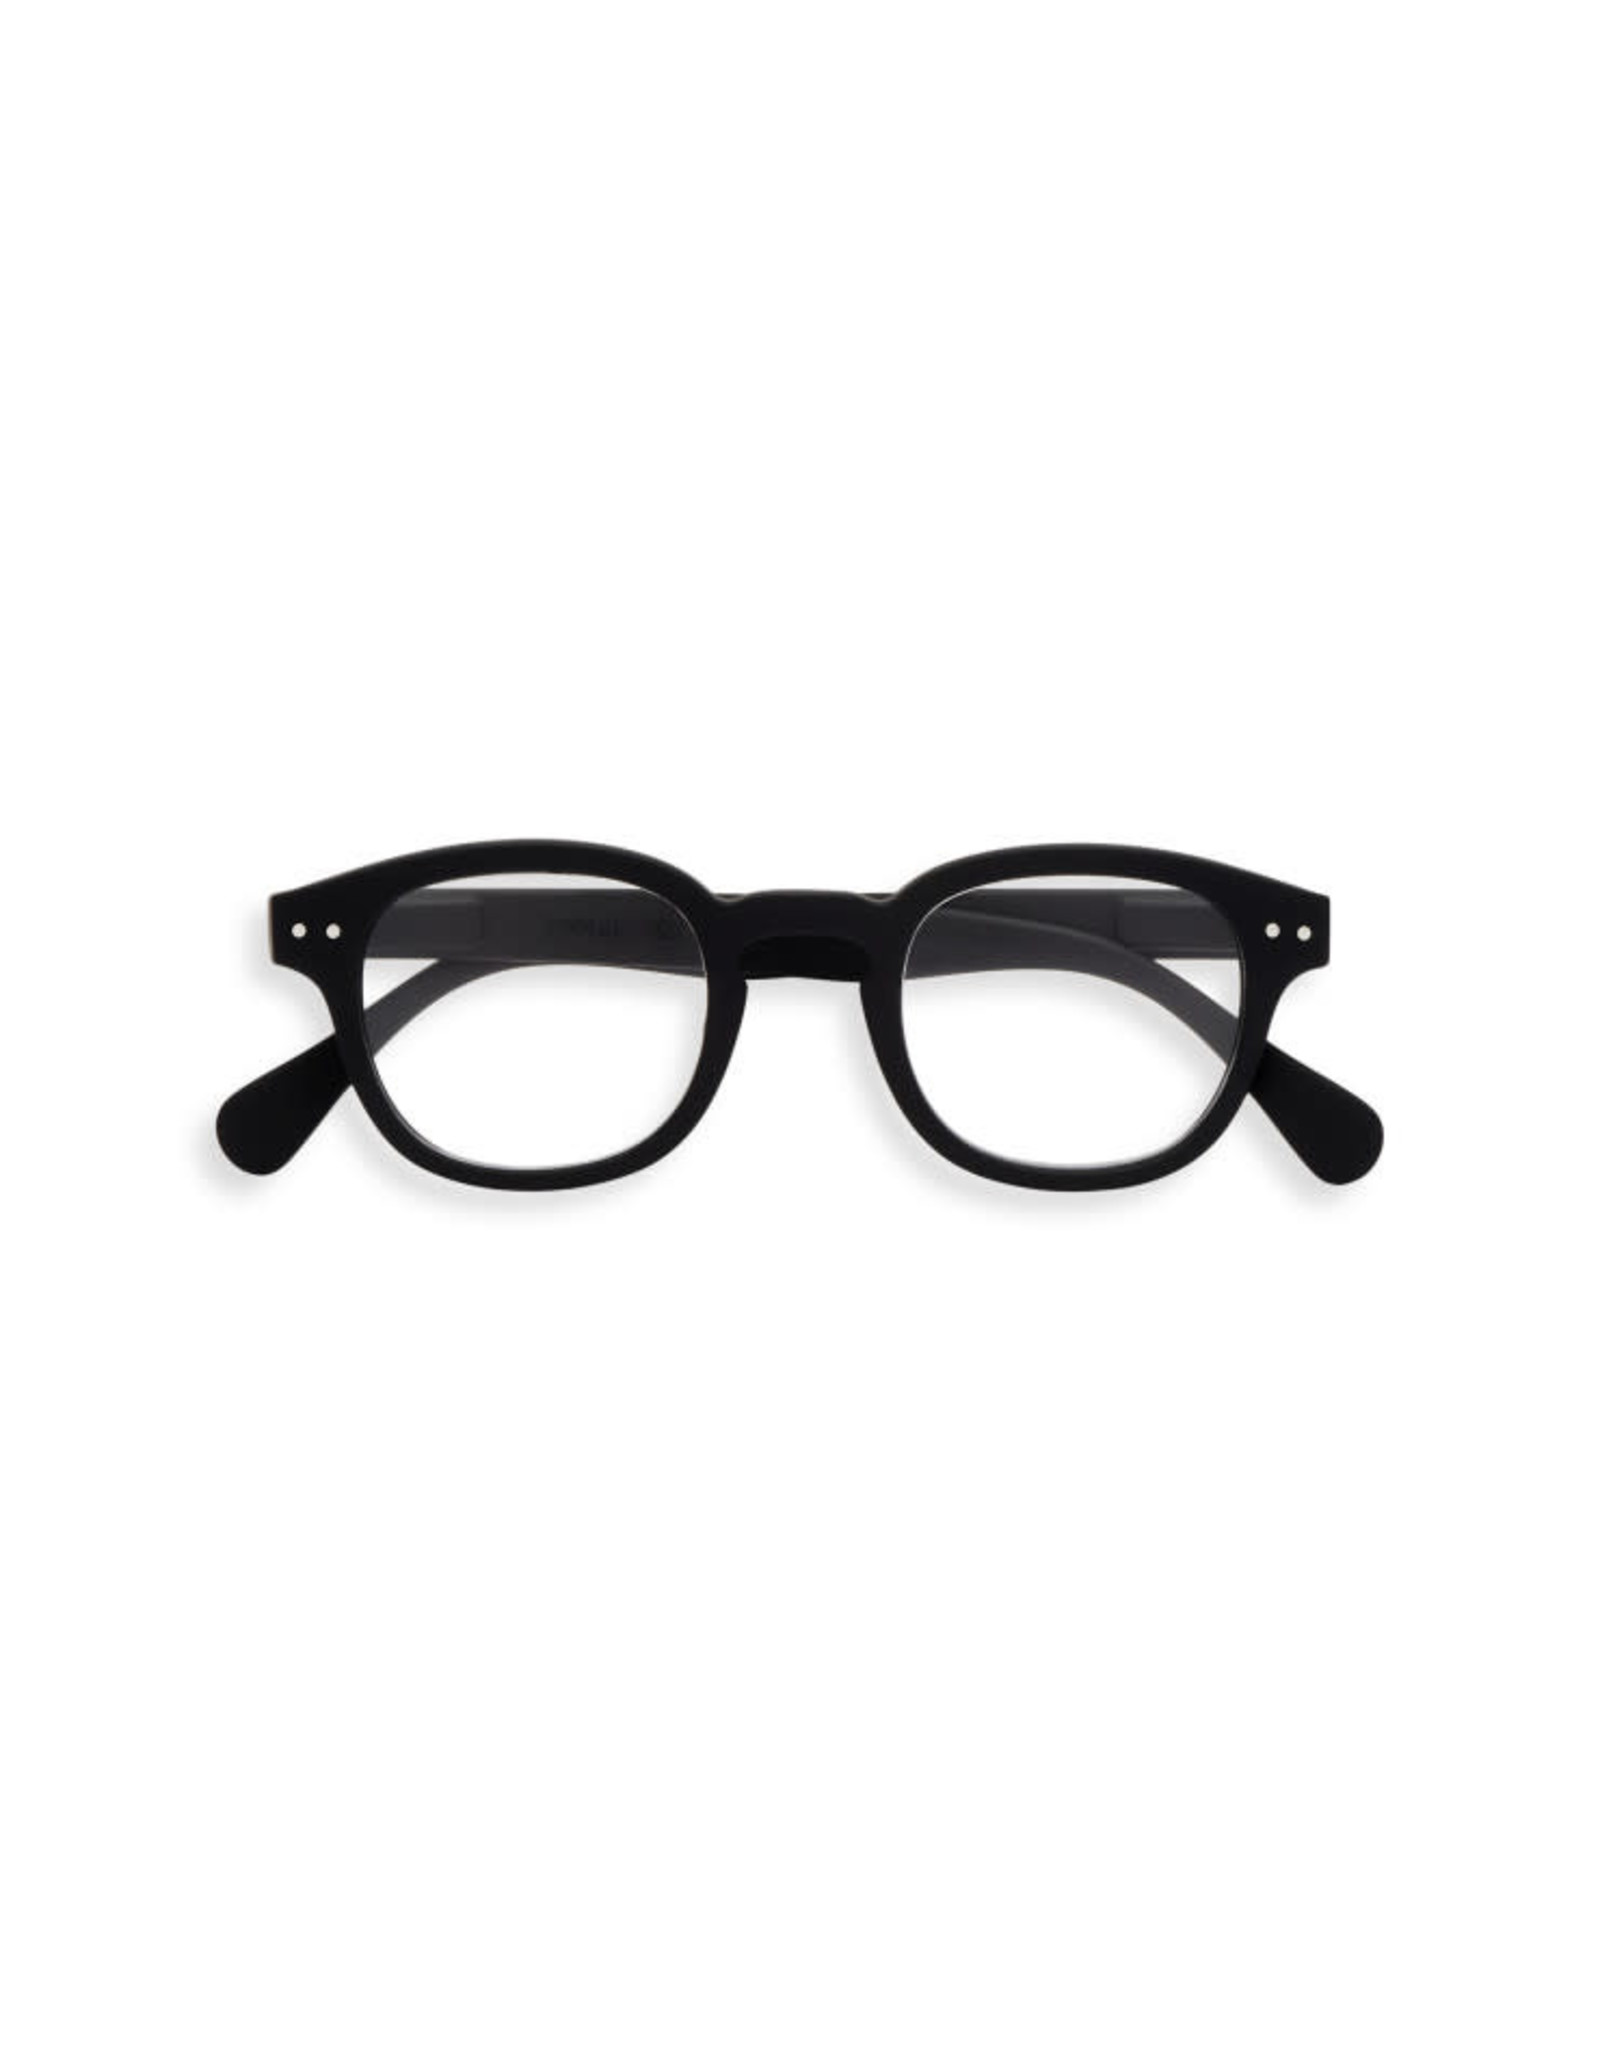 IZIPIZI C Reading Glasses, Black, 3.0